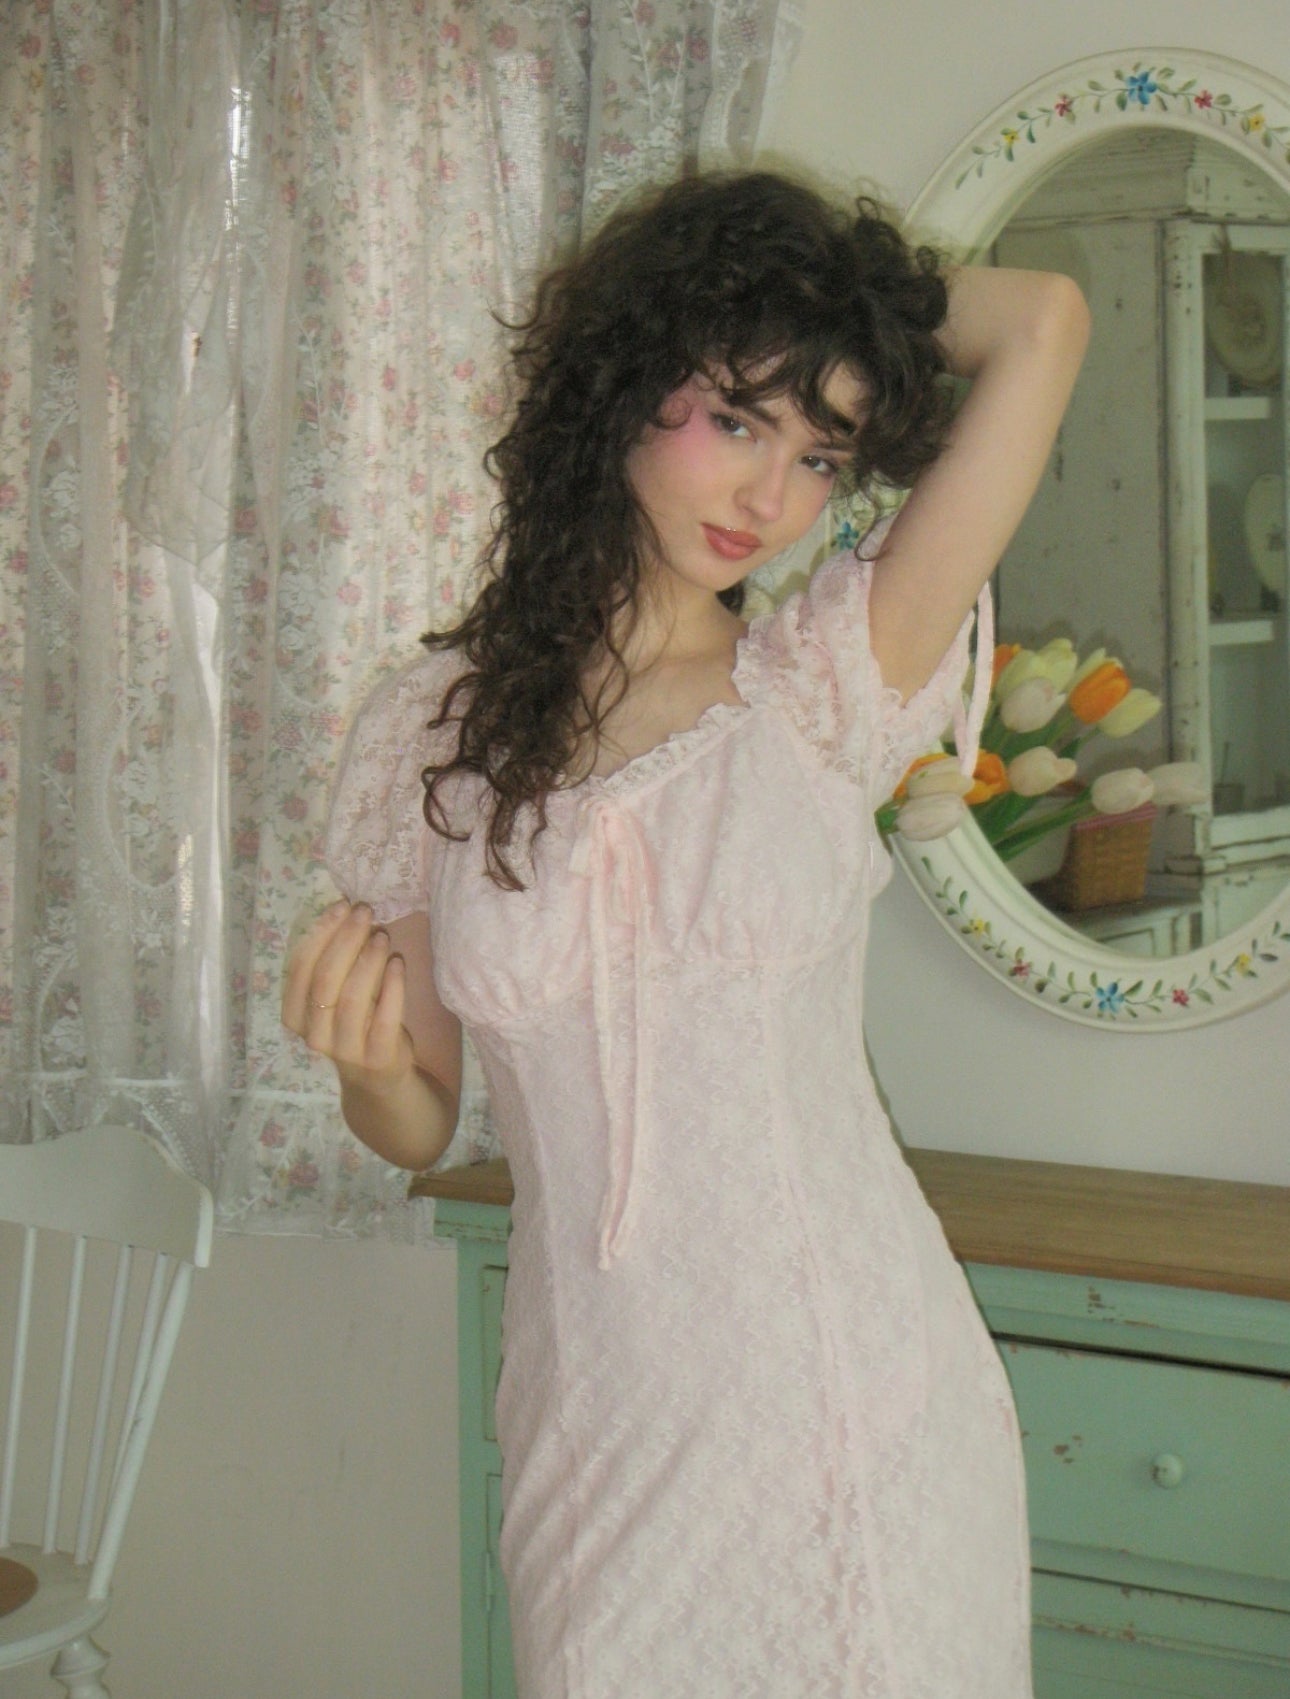 Pink Lace Midi Dress